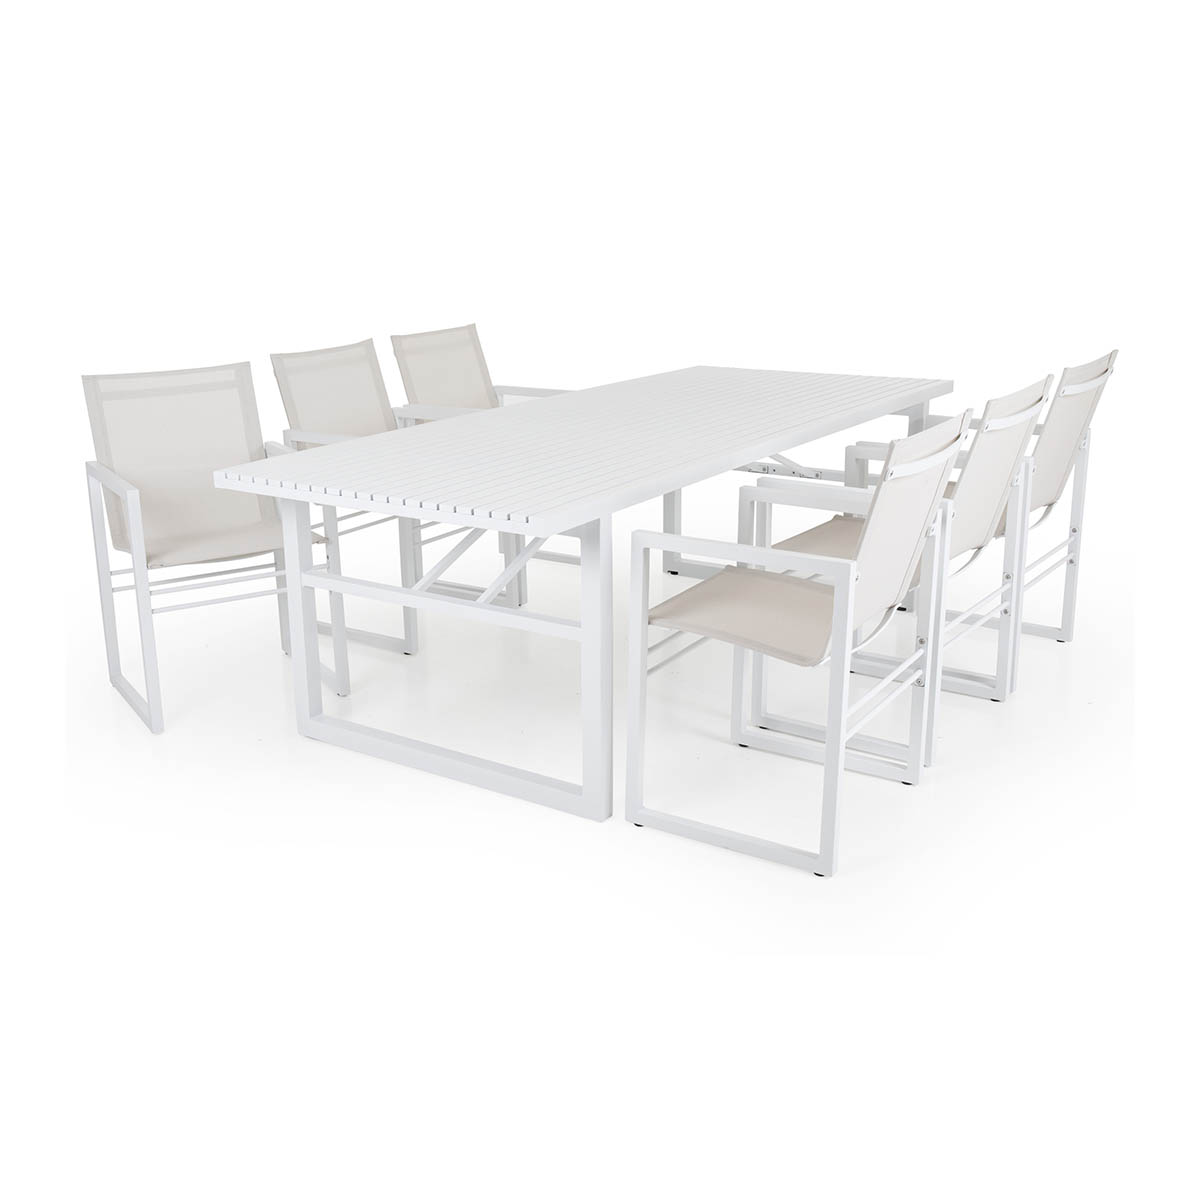 stort spisebord med plass til familie og venner til stoler og benker i samme stil. Stolene er i aluminium